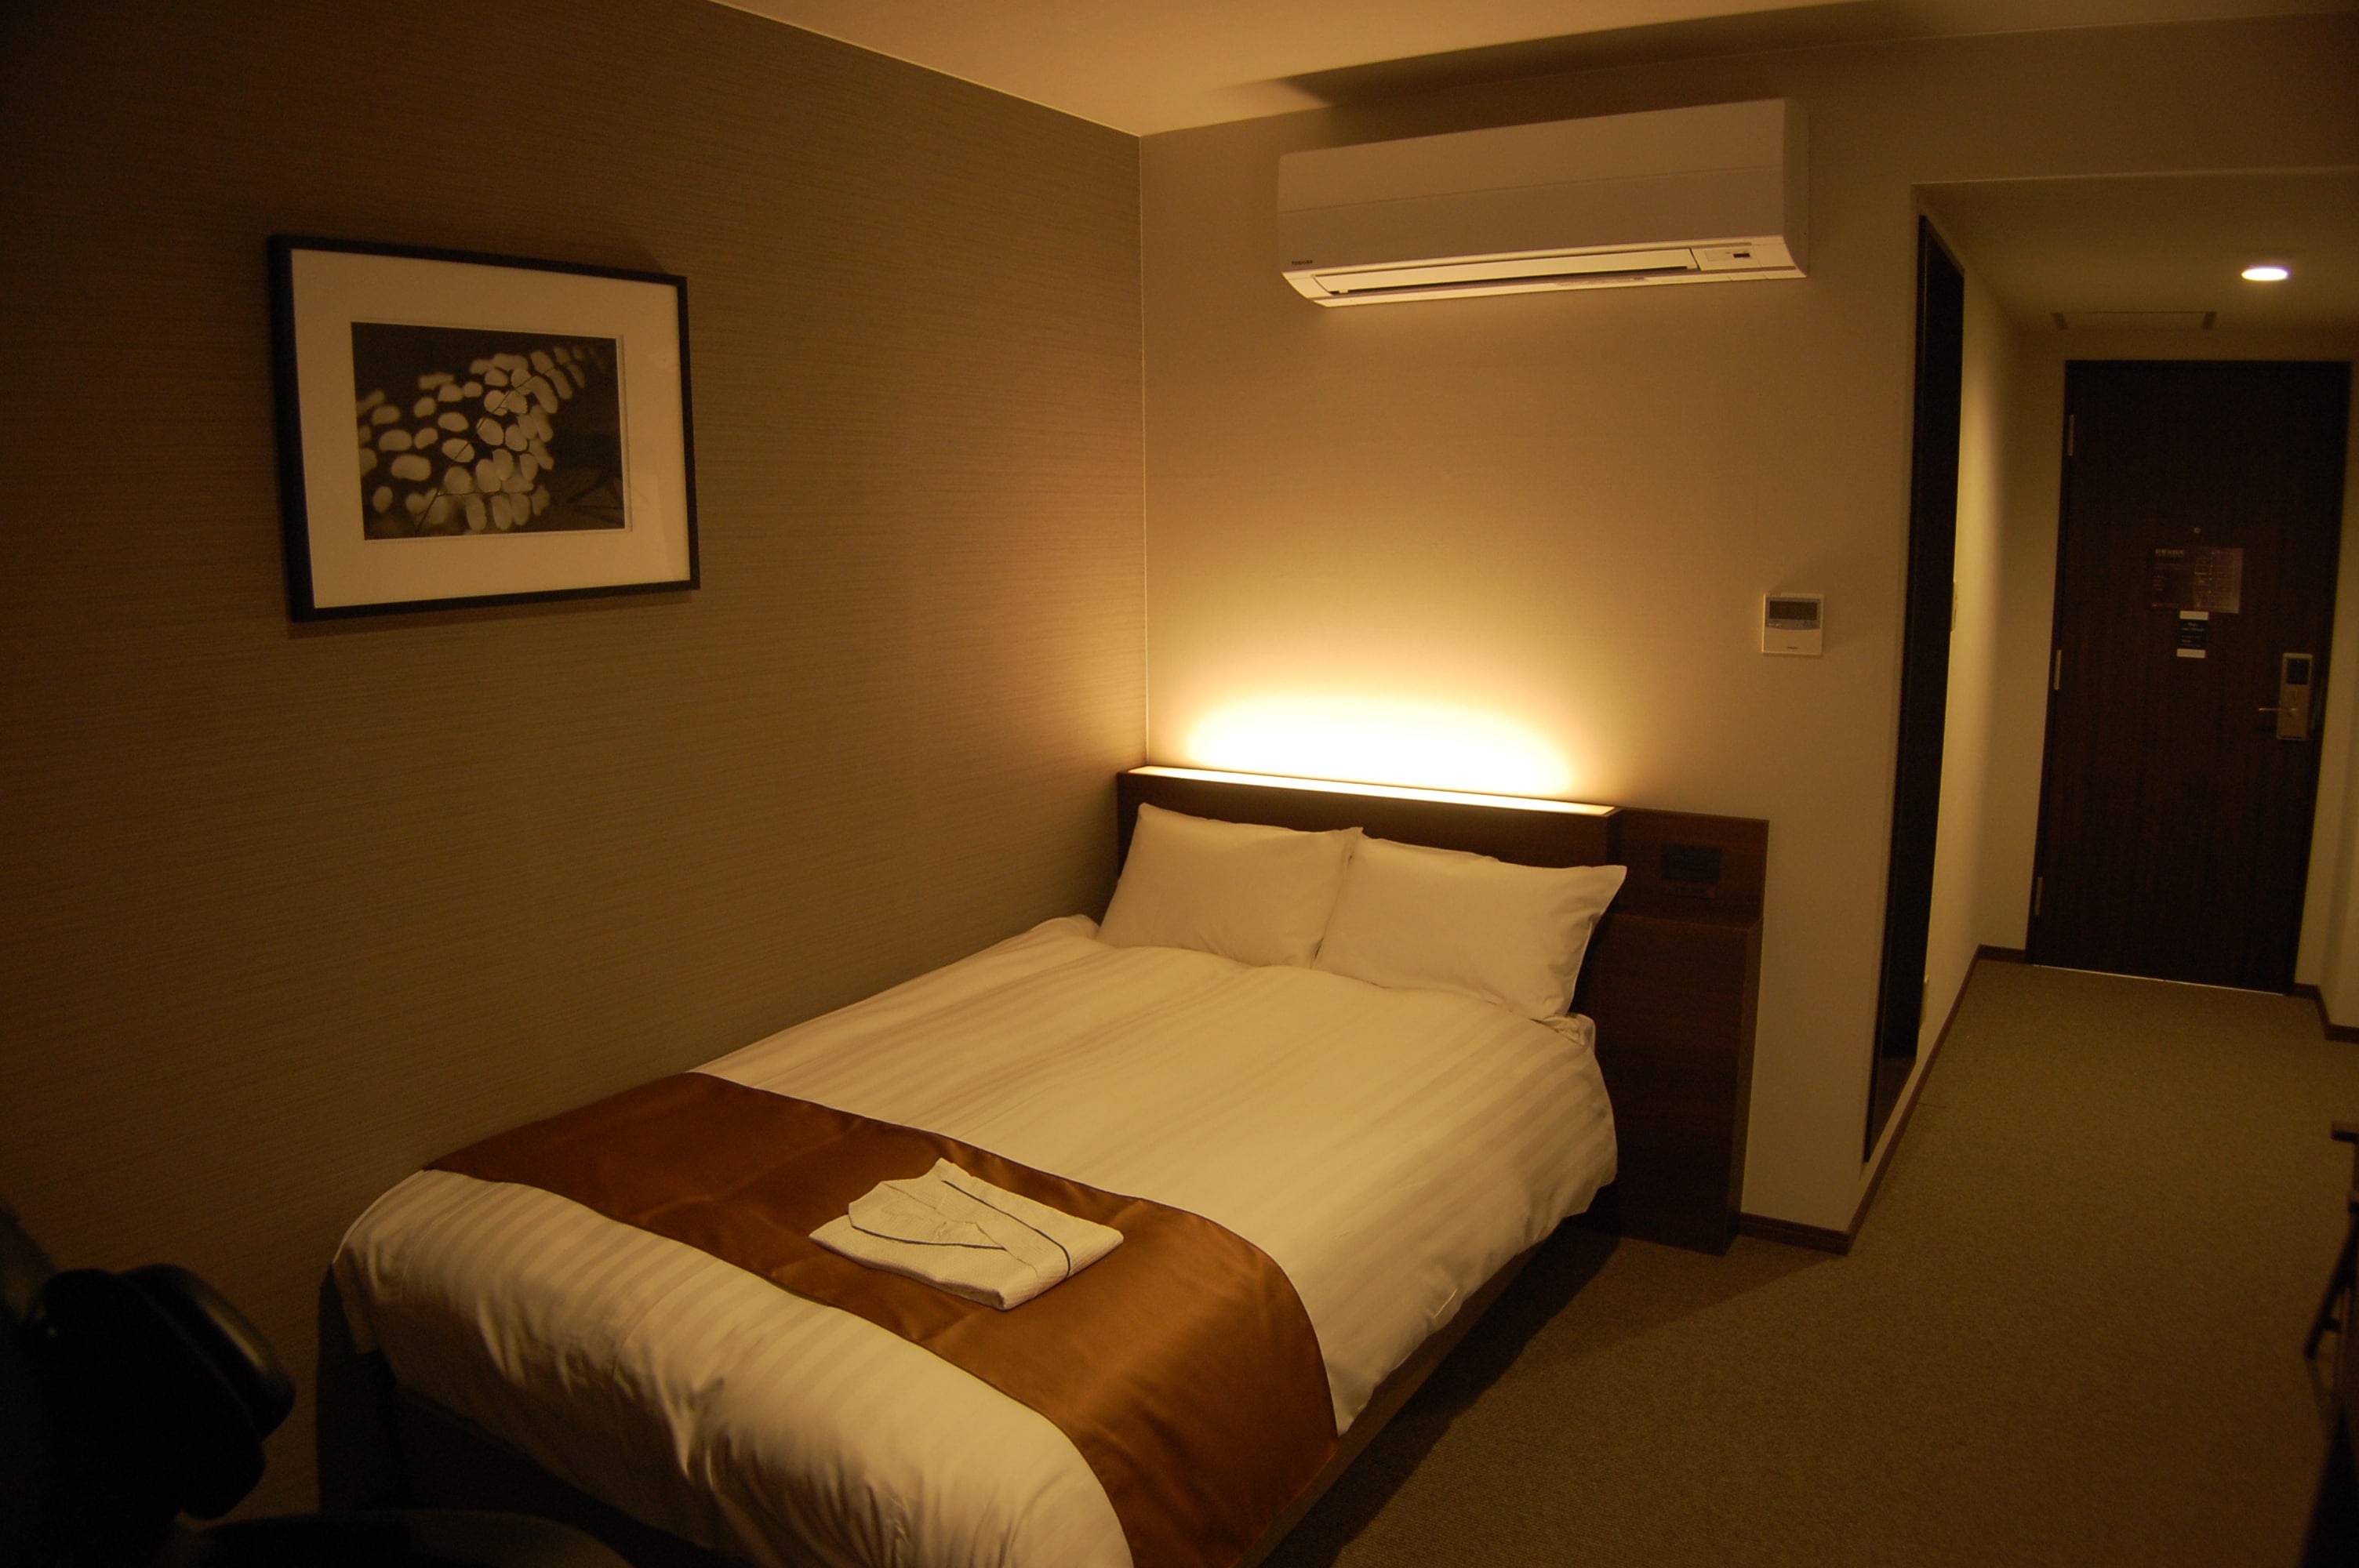 Kamar single dengan ukuran luas 20㎡, tempat tidur Simmons semi-double